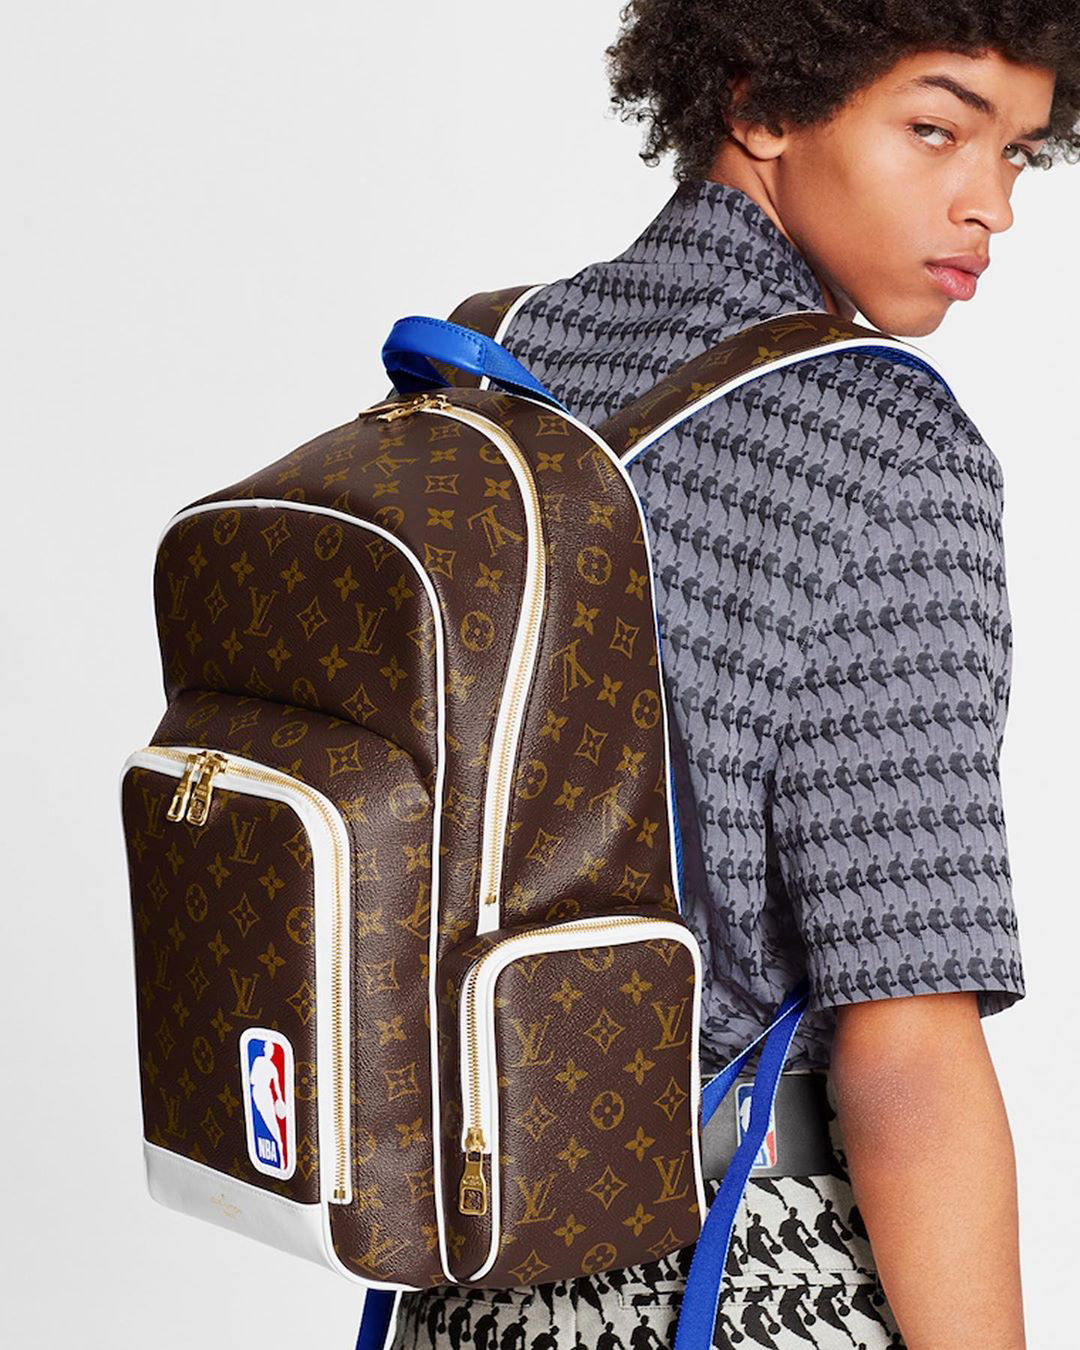 Louis Vuitton x NBA Capsule Collection - Fleek Mag